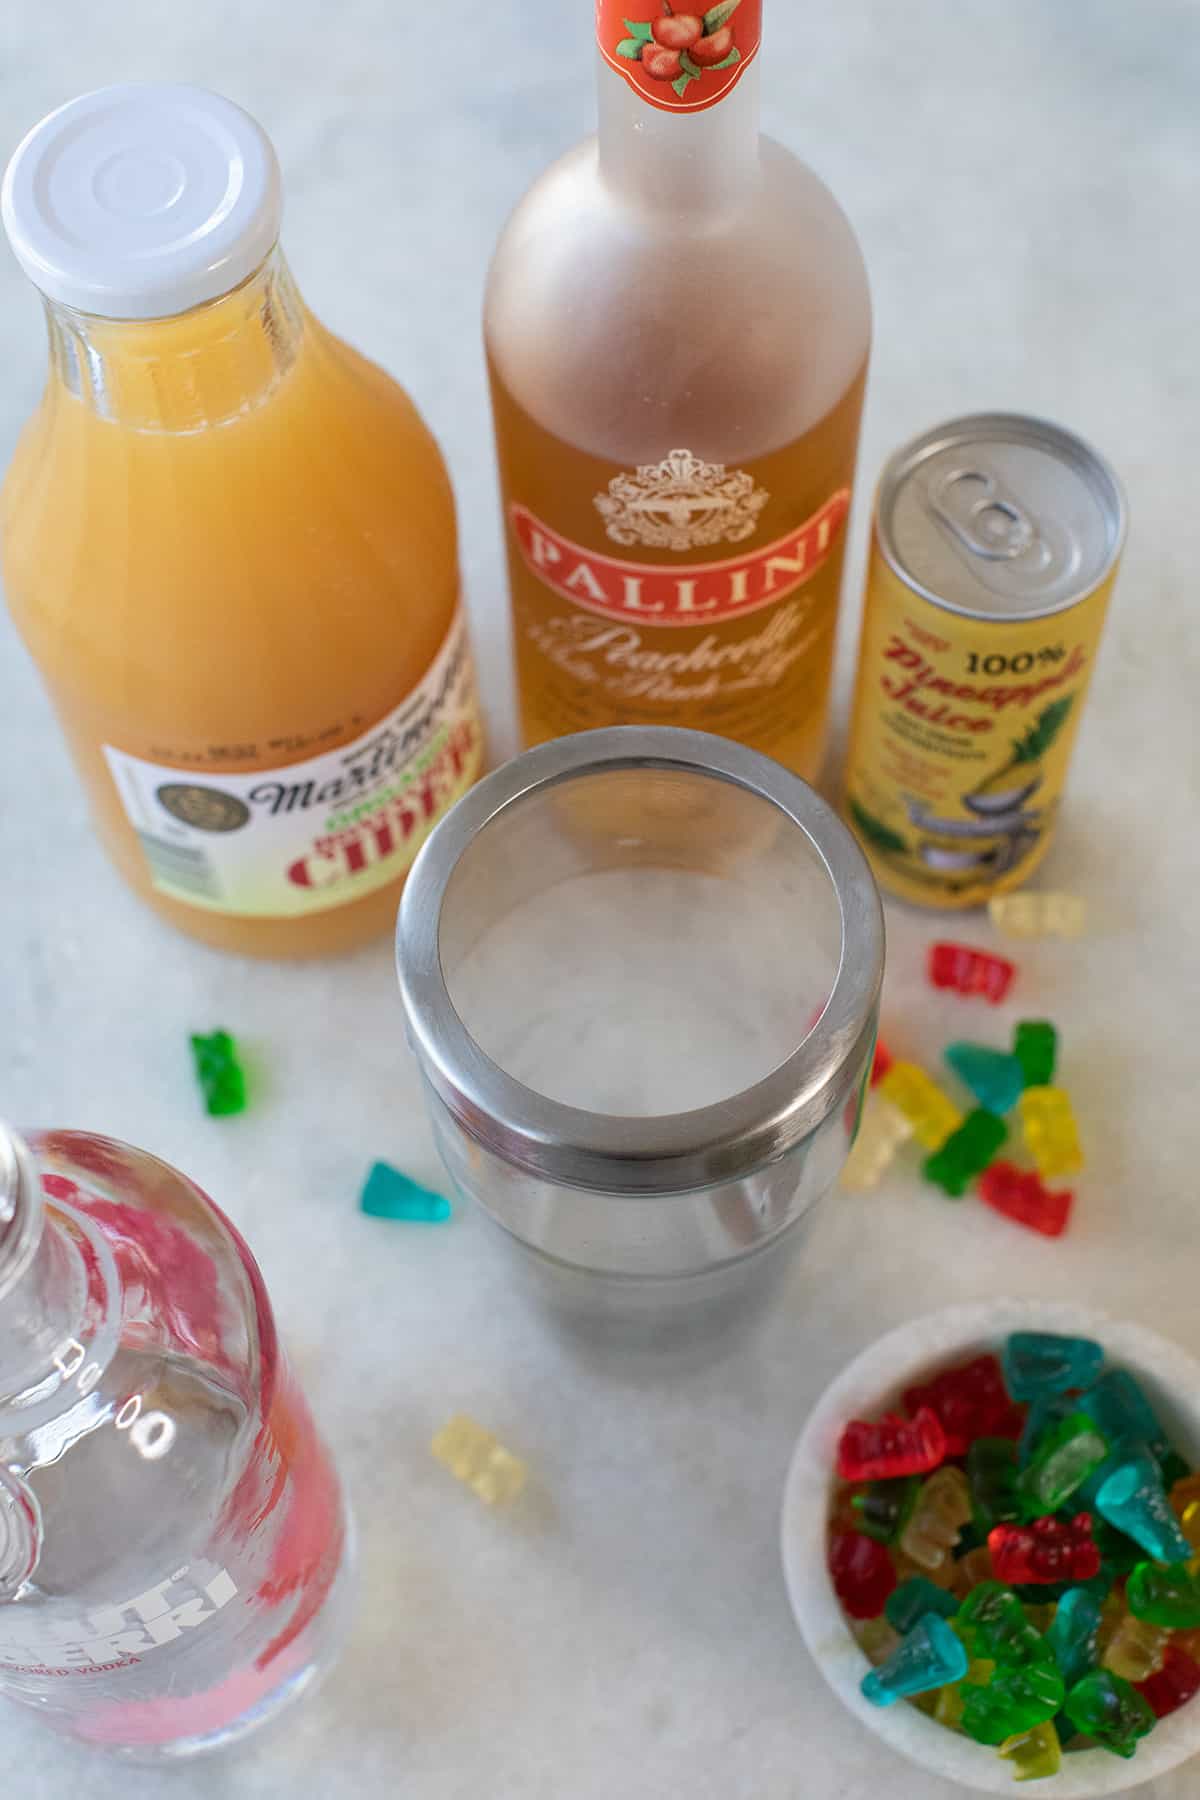 Pineapple juice, raspberry vodka, apple juice and gummy bears.